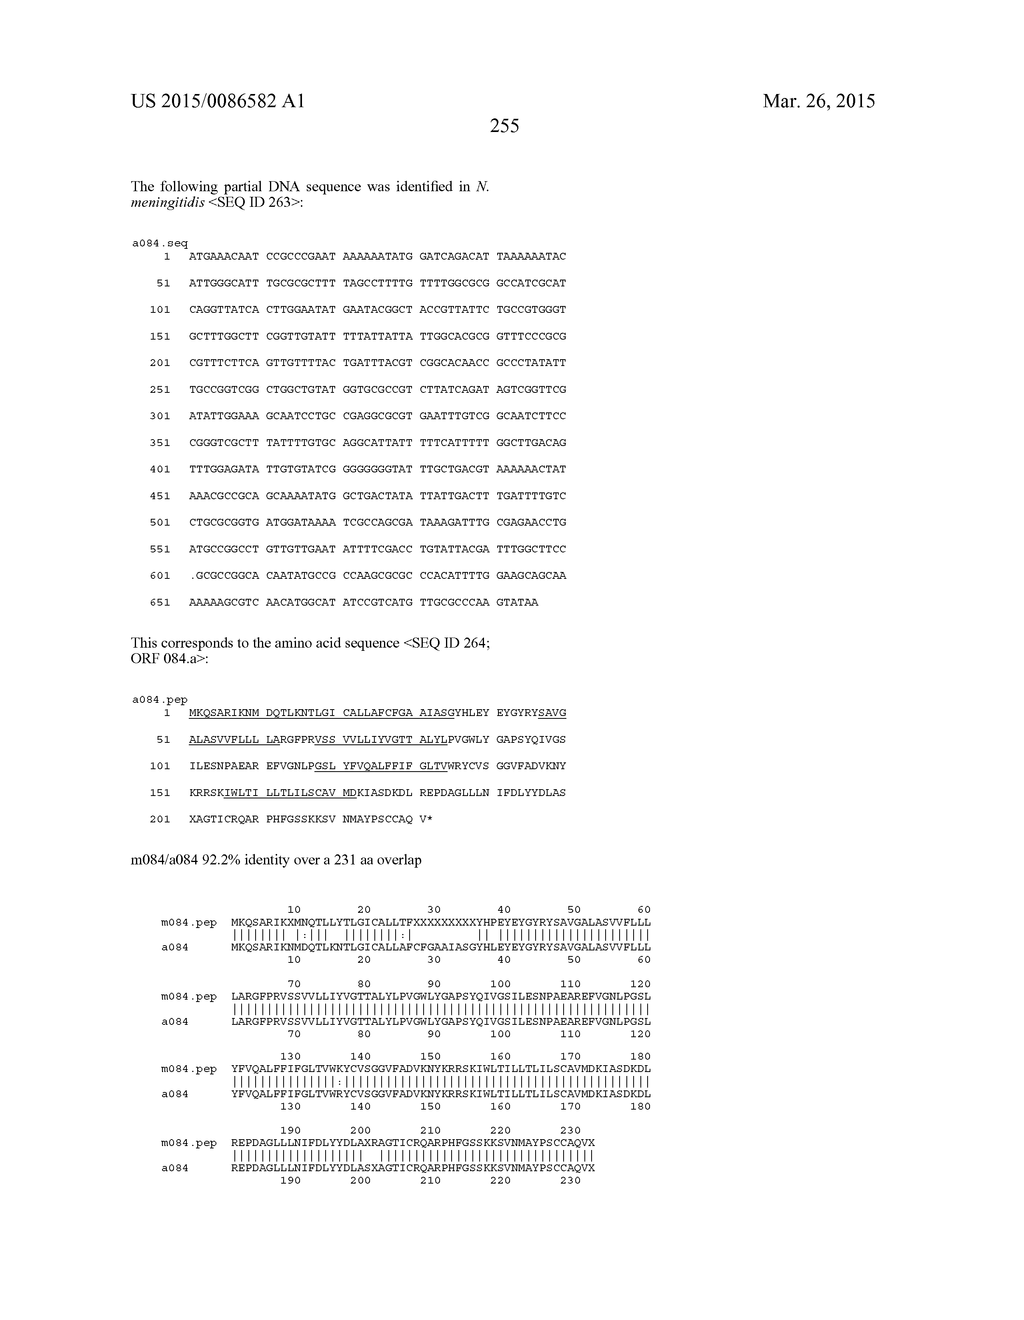 NEISSERIA MENINGITIDIS ANTIGENS AND COMPOSITIONS - diagram, schematic, and image 287